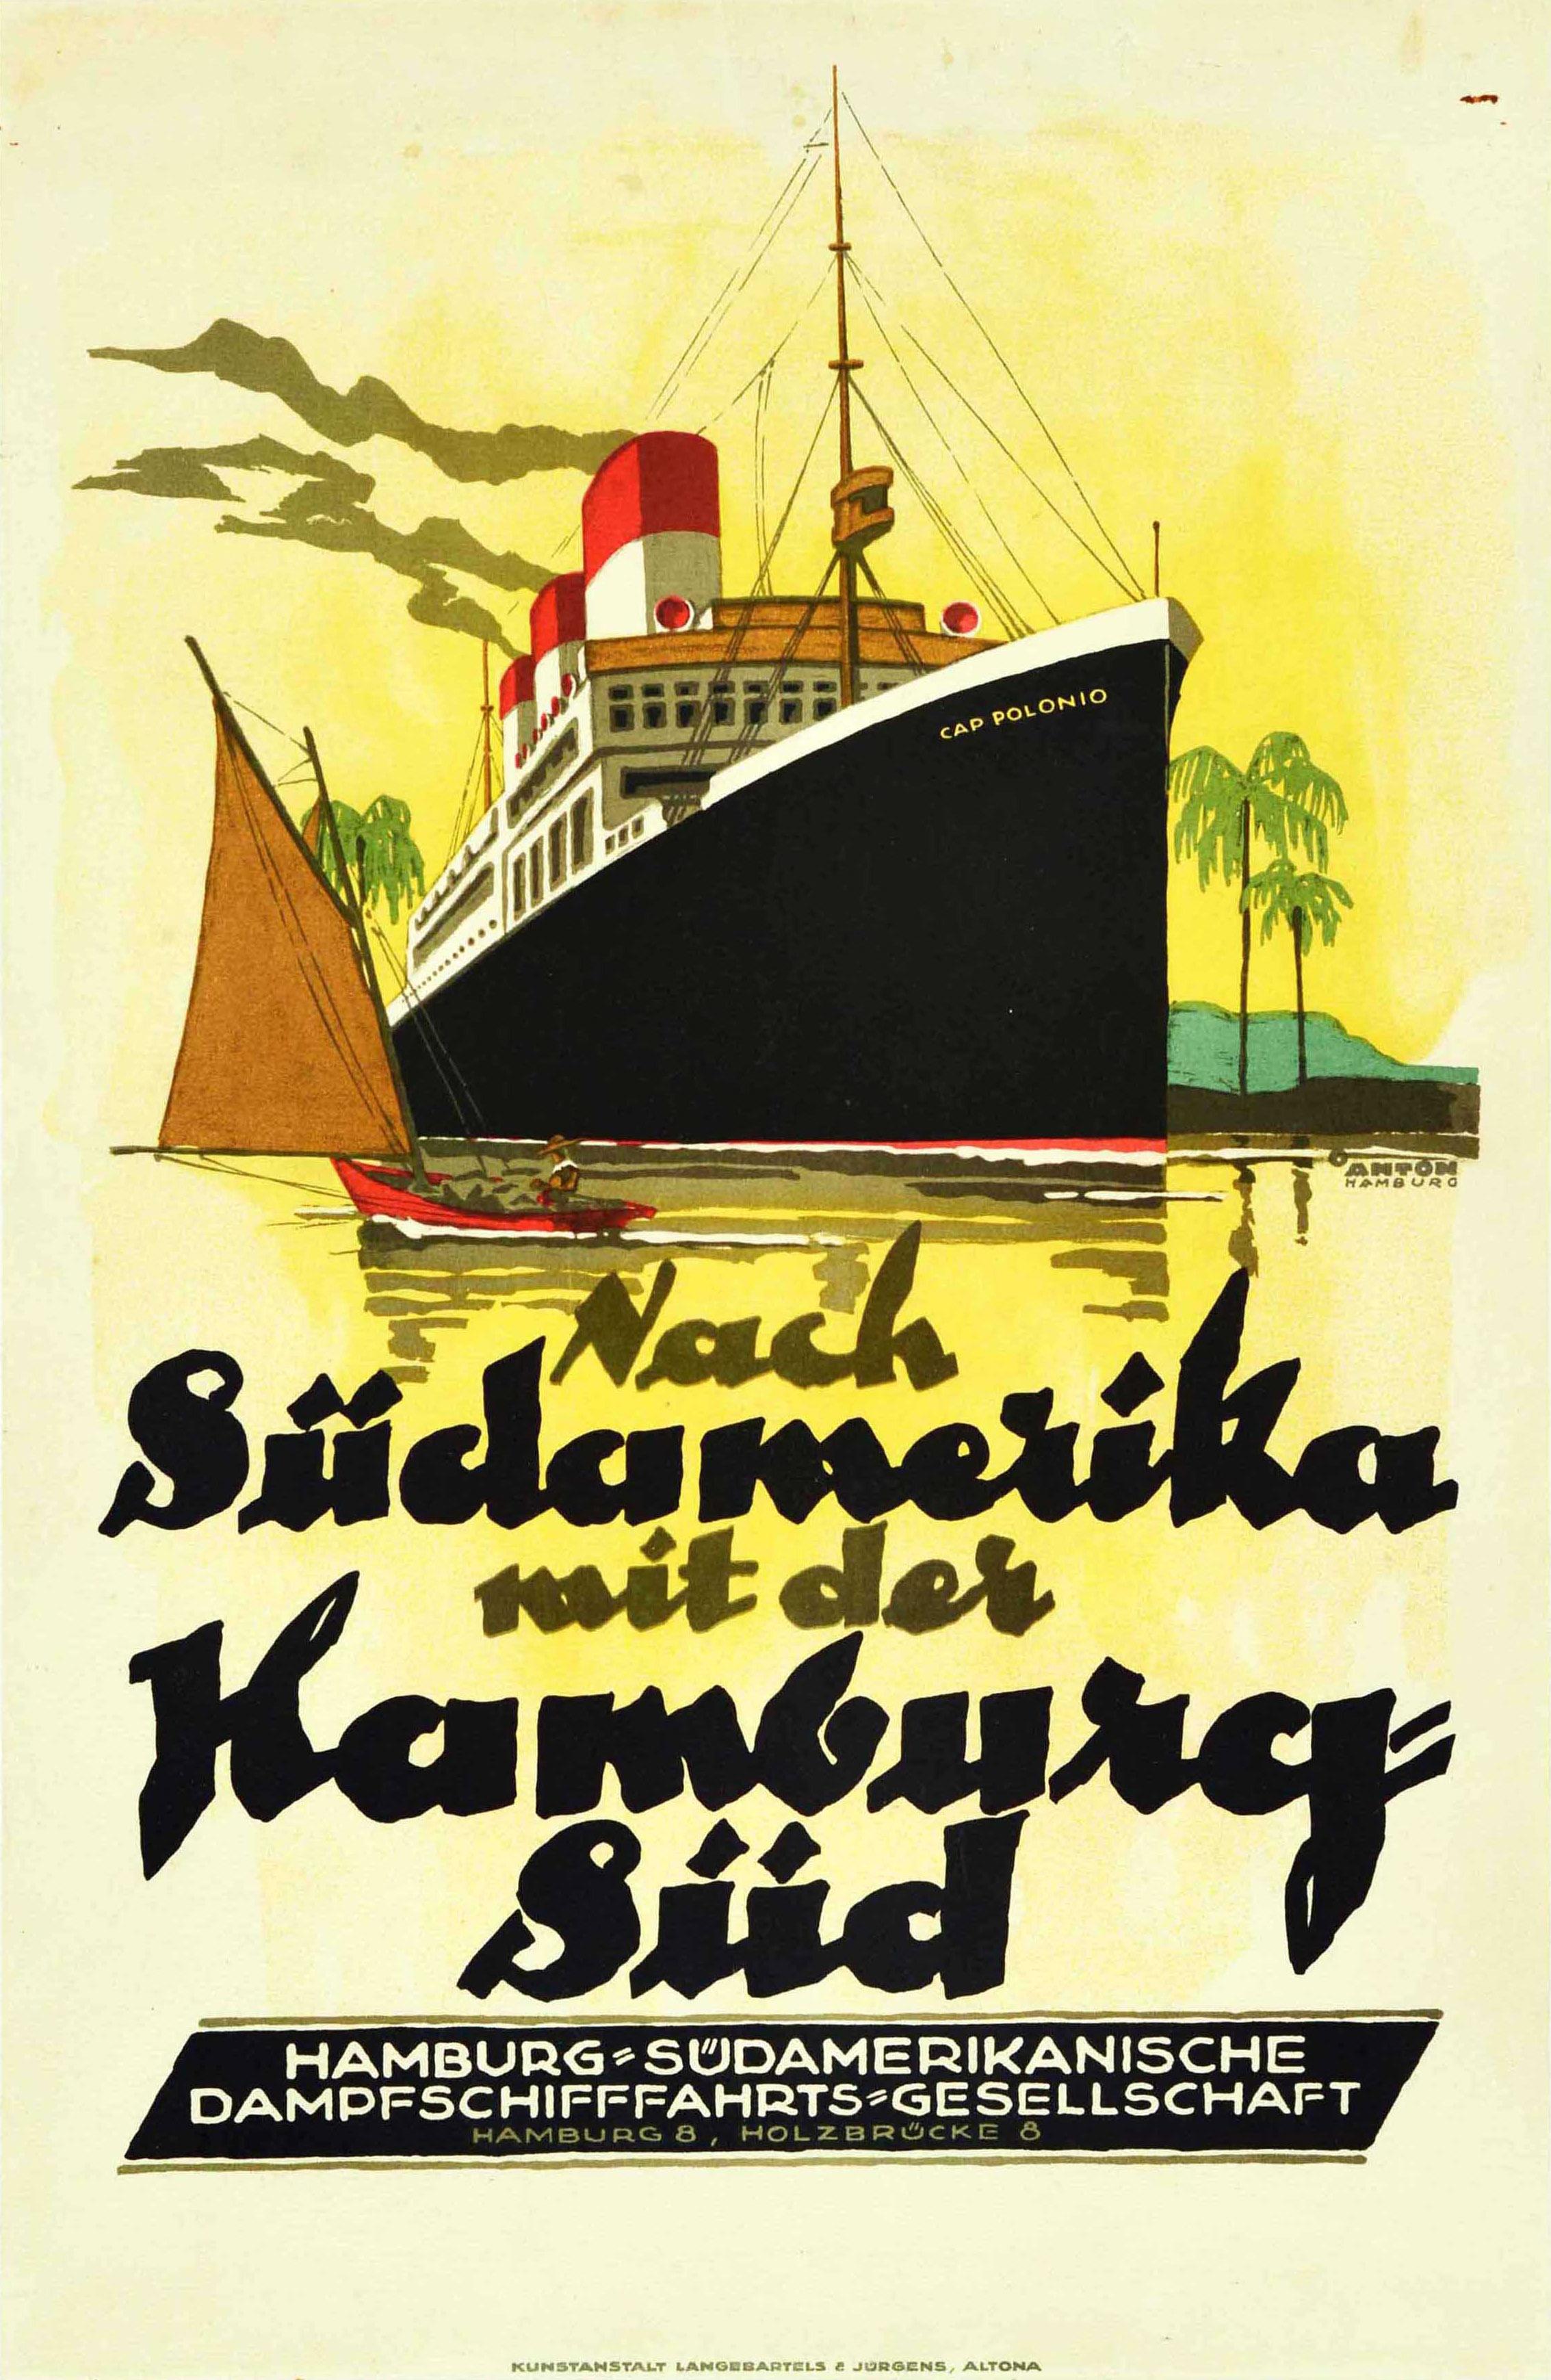 Ottomar Anton Print – Original-Vintage-Poster, Sudamerika S America Hamburg Sud, Kreuzfahrtschiff-Kappe Polonio